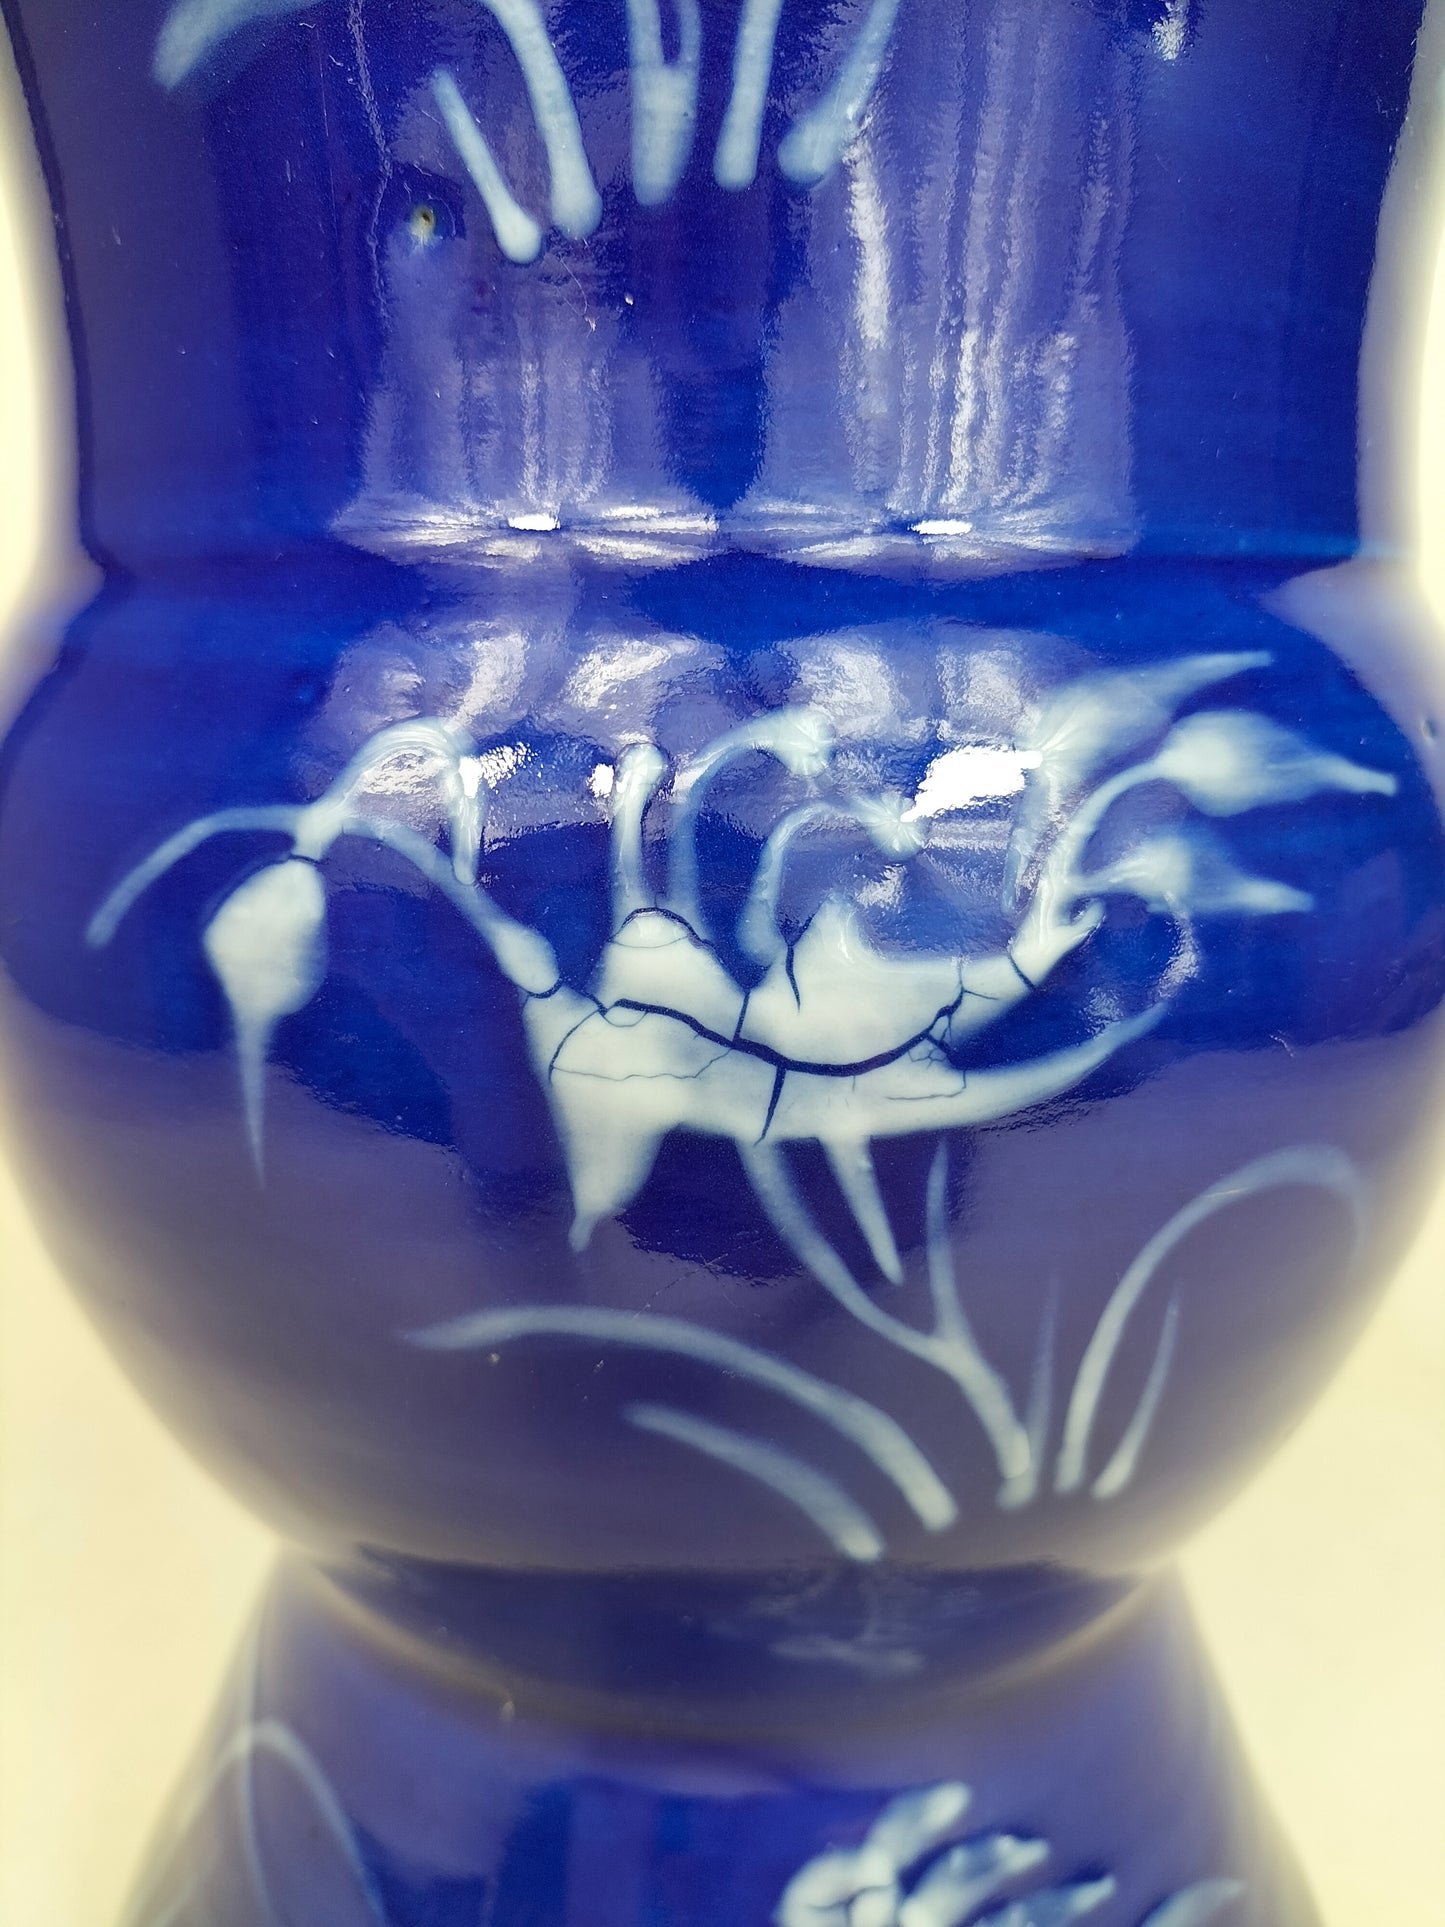 古董中国粉蓝色觚花瓶//清朝 - 19 世纪